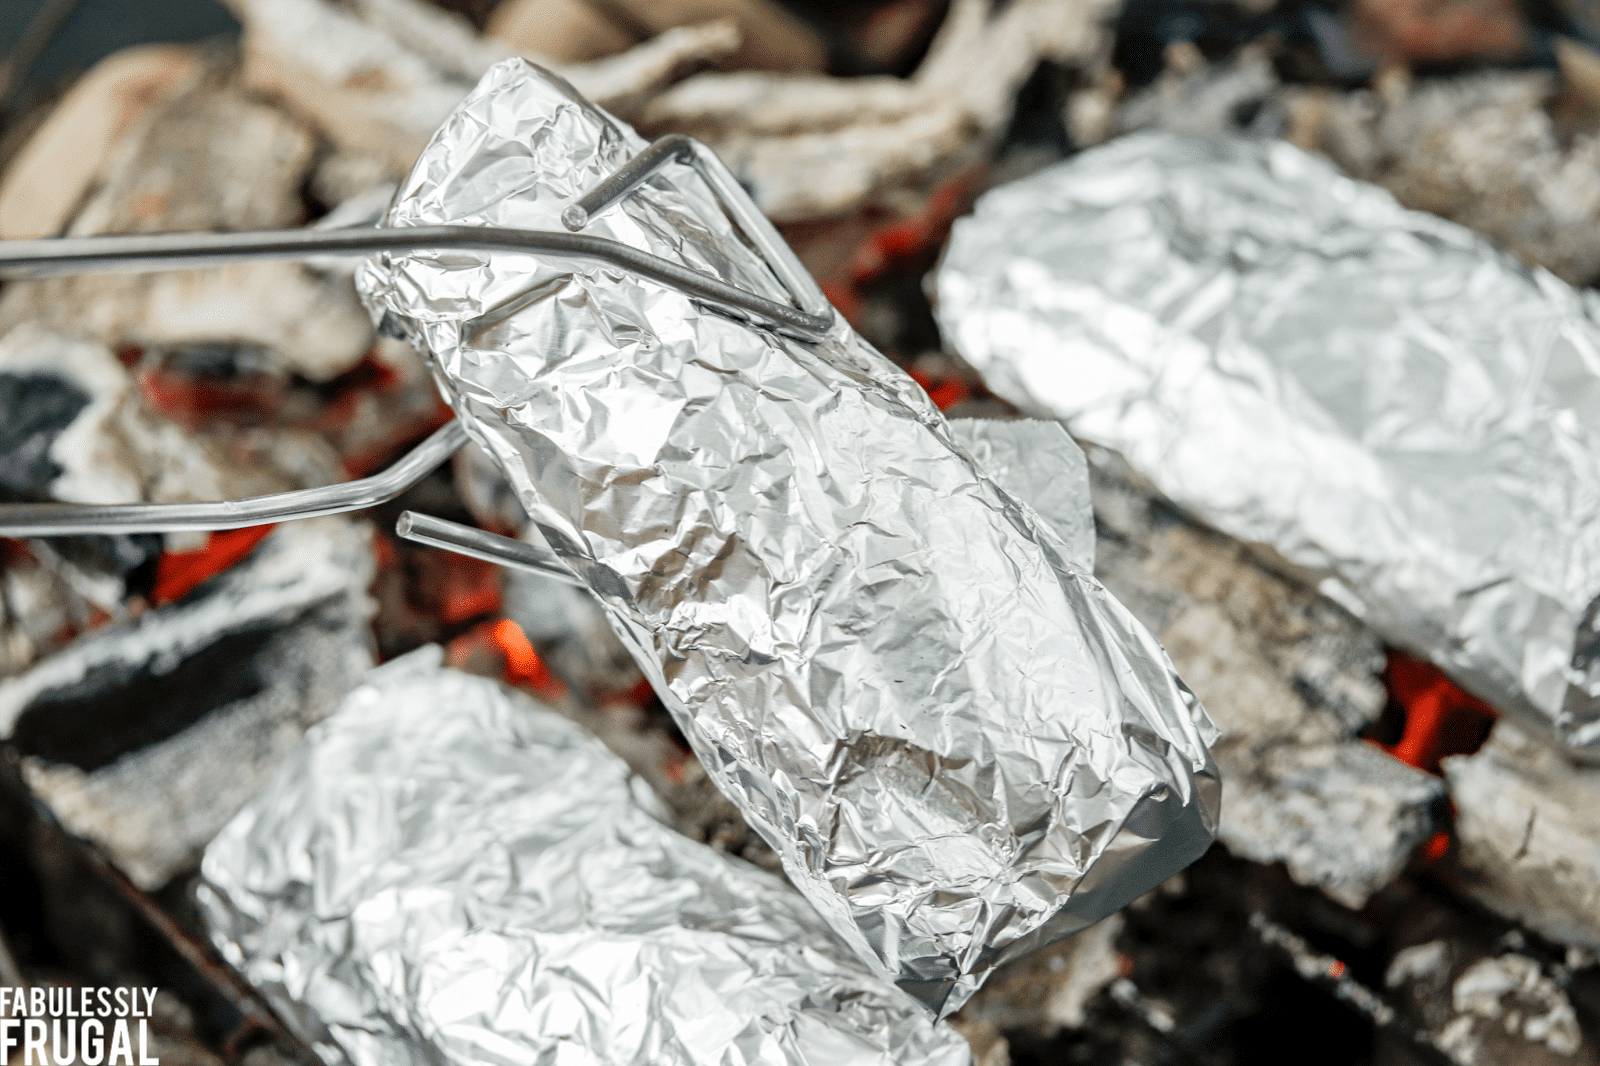 Campfire burritos